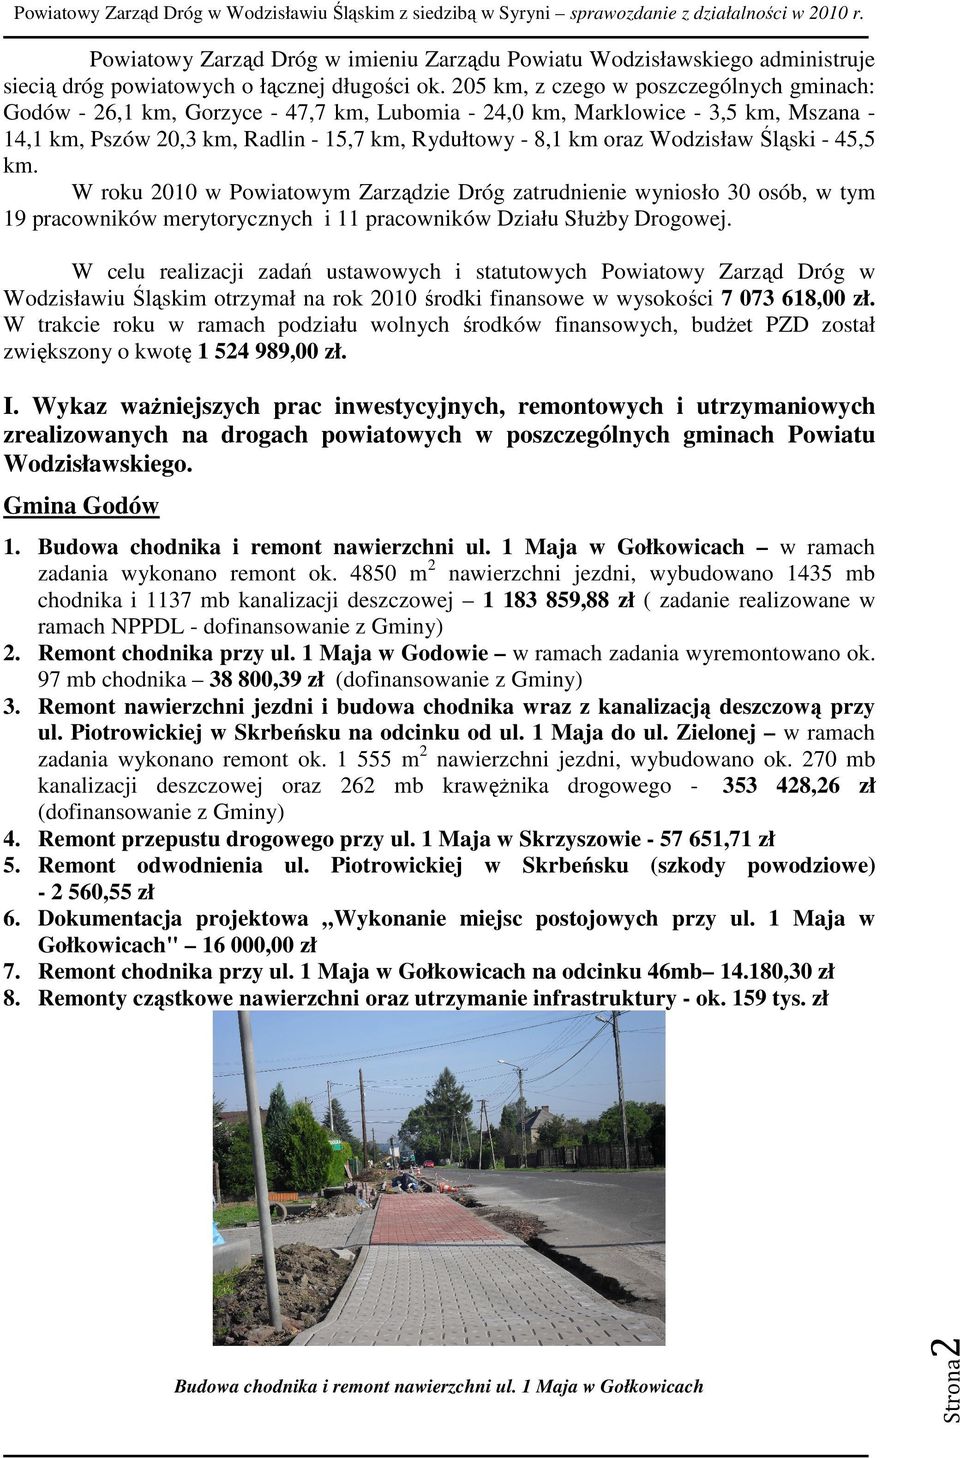 Wodzisław Śląski - 45,5 km. W roku 2010 w Powiatowym Zarządzie Dróg zatrudnienie wyniosło 30 osób, w tym 19 pracowników merytorycznych i 11 pracowników Działu SłuŜby Drogowej.